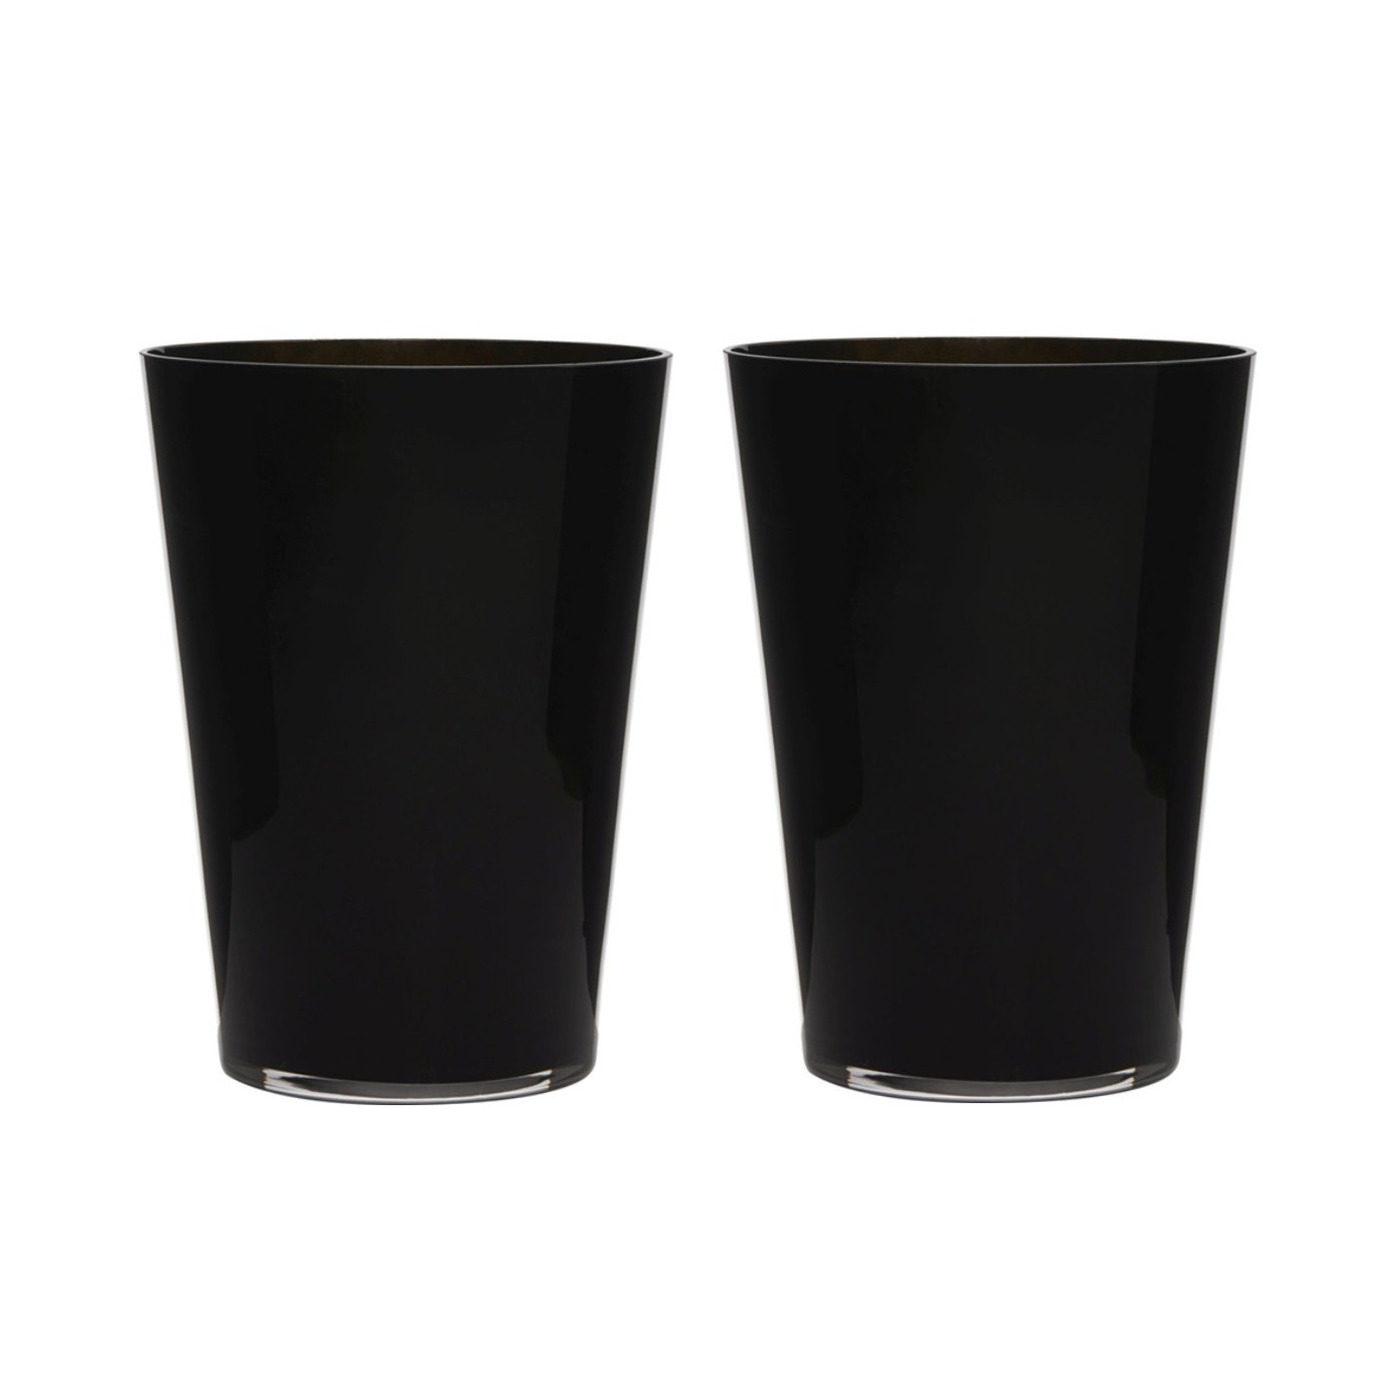 2x stuks luxe stijlvolle zwarte conische bloemen vaas-vazen van glas 30 x 22 cm